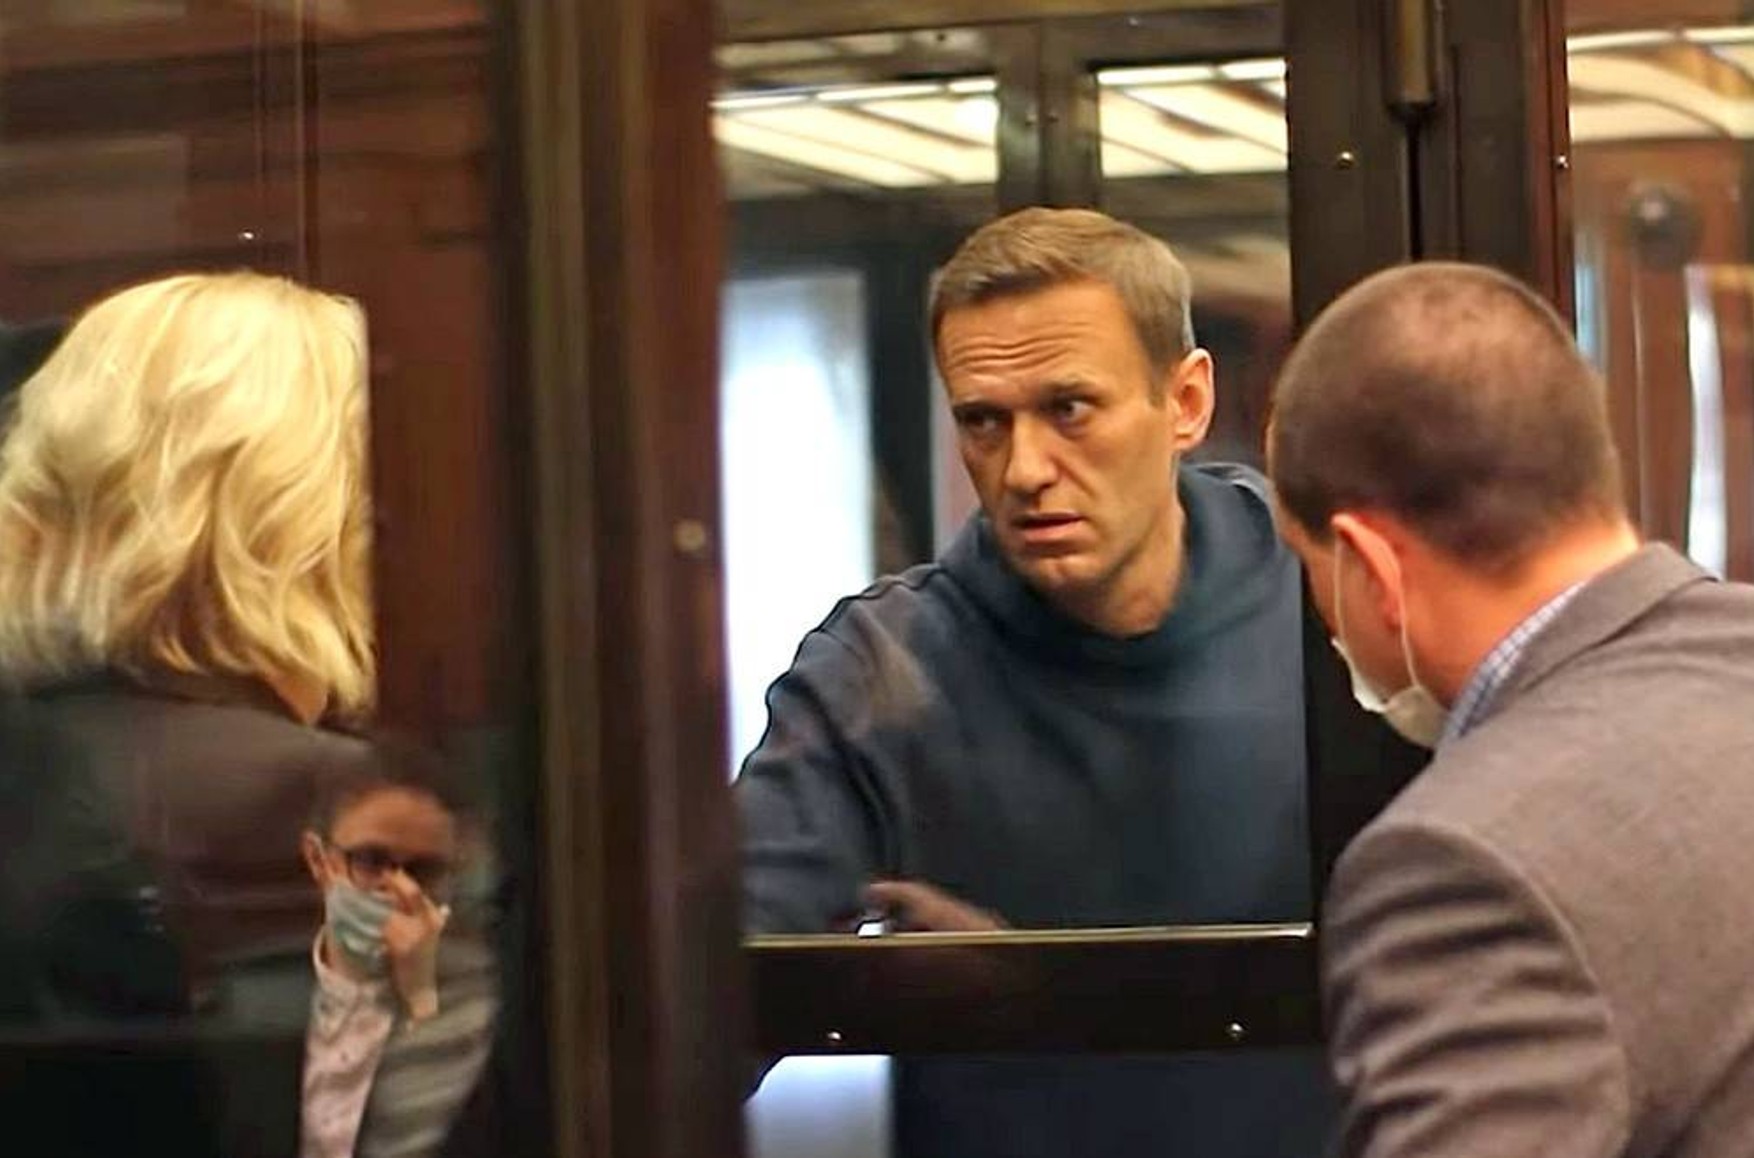 Судові пристави почали шукати майно і рахунки Навального для стягнення боргів на суму 29 млн рублів